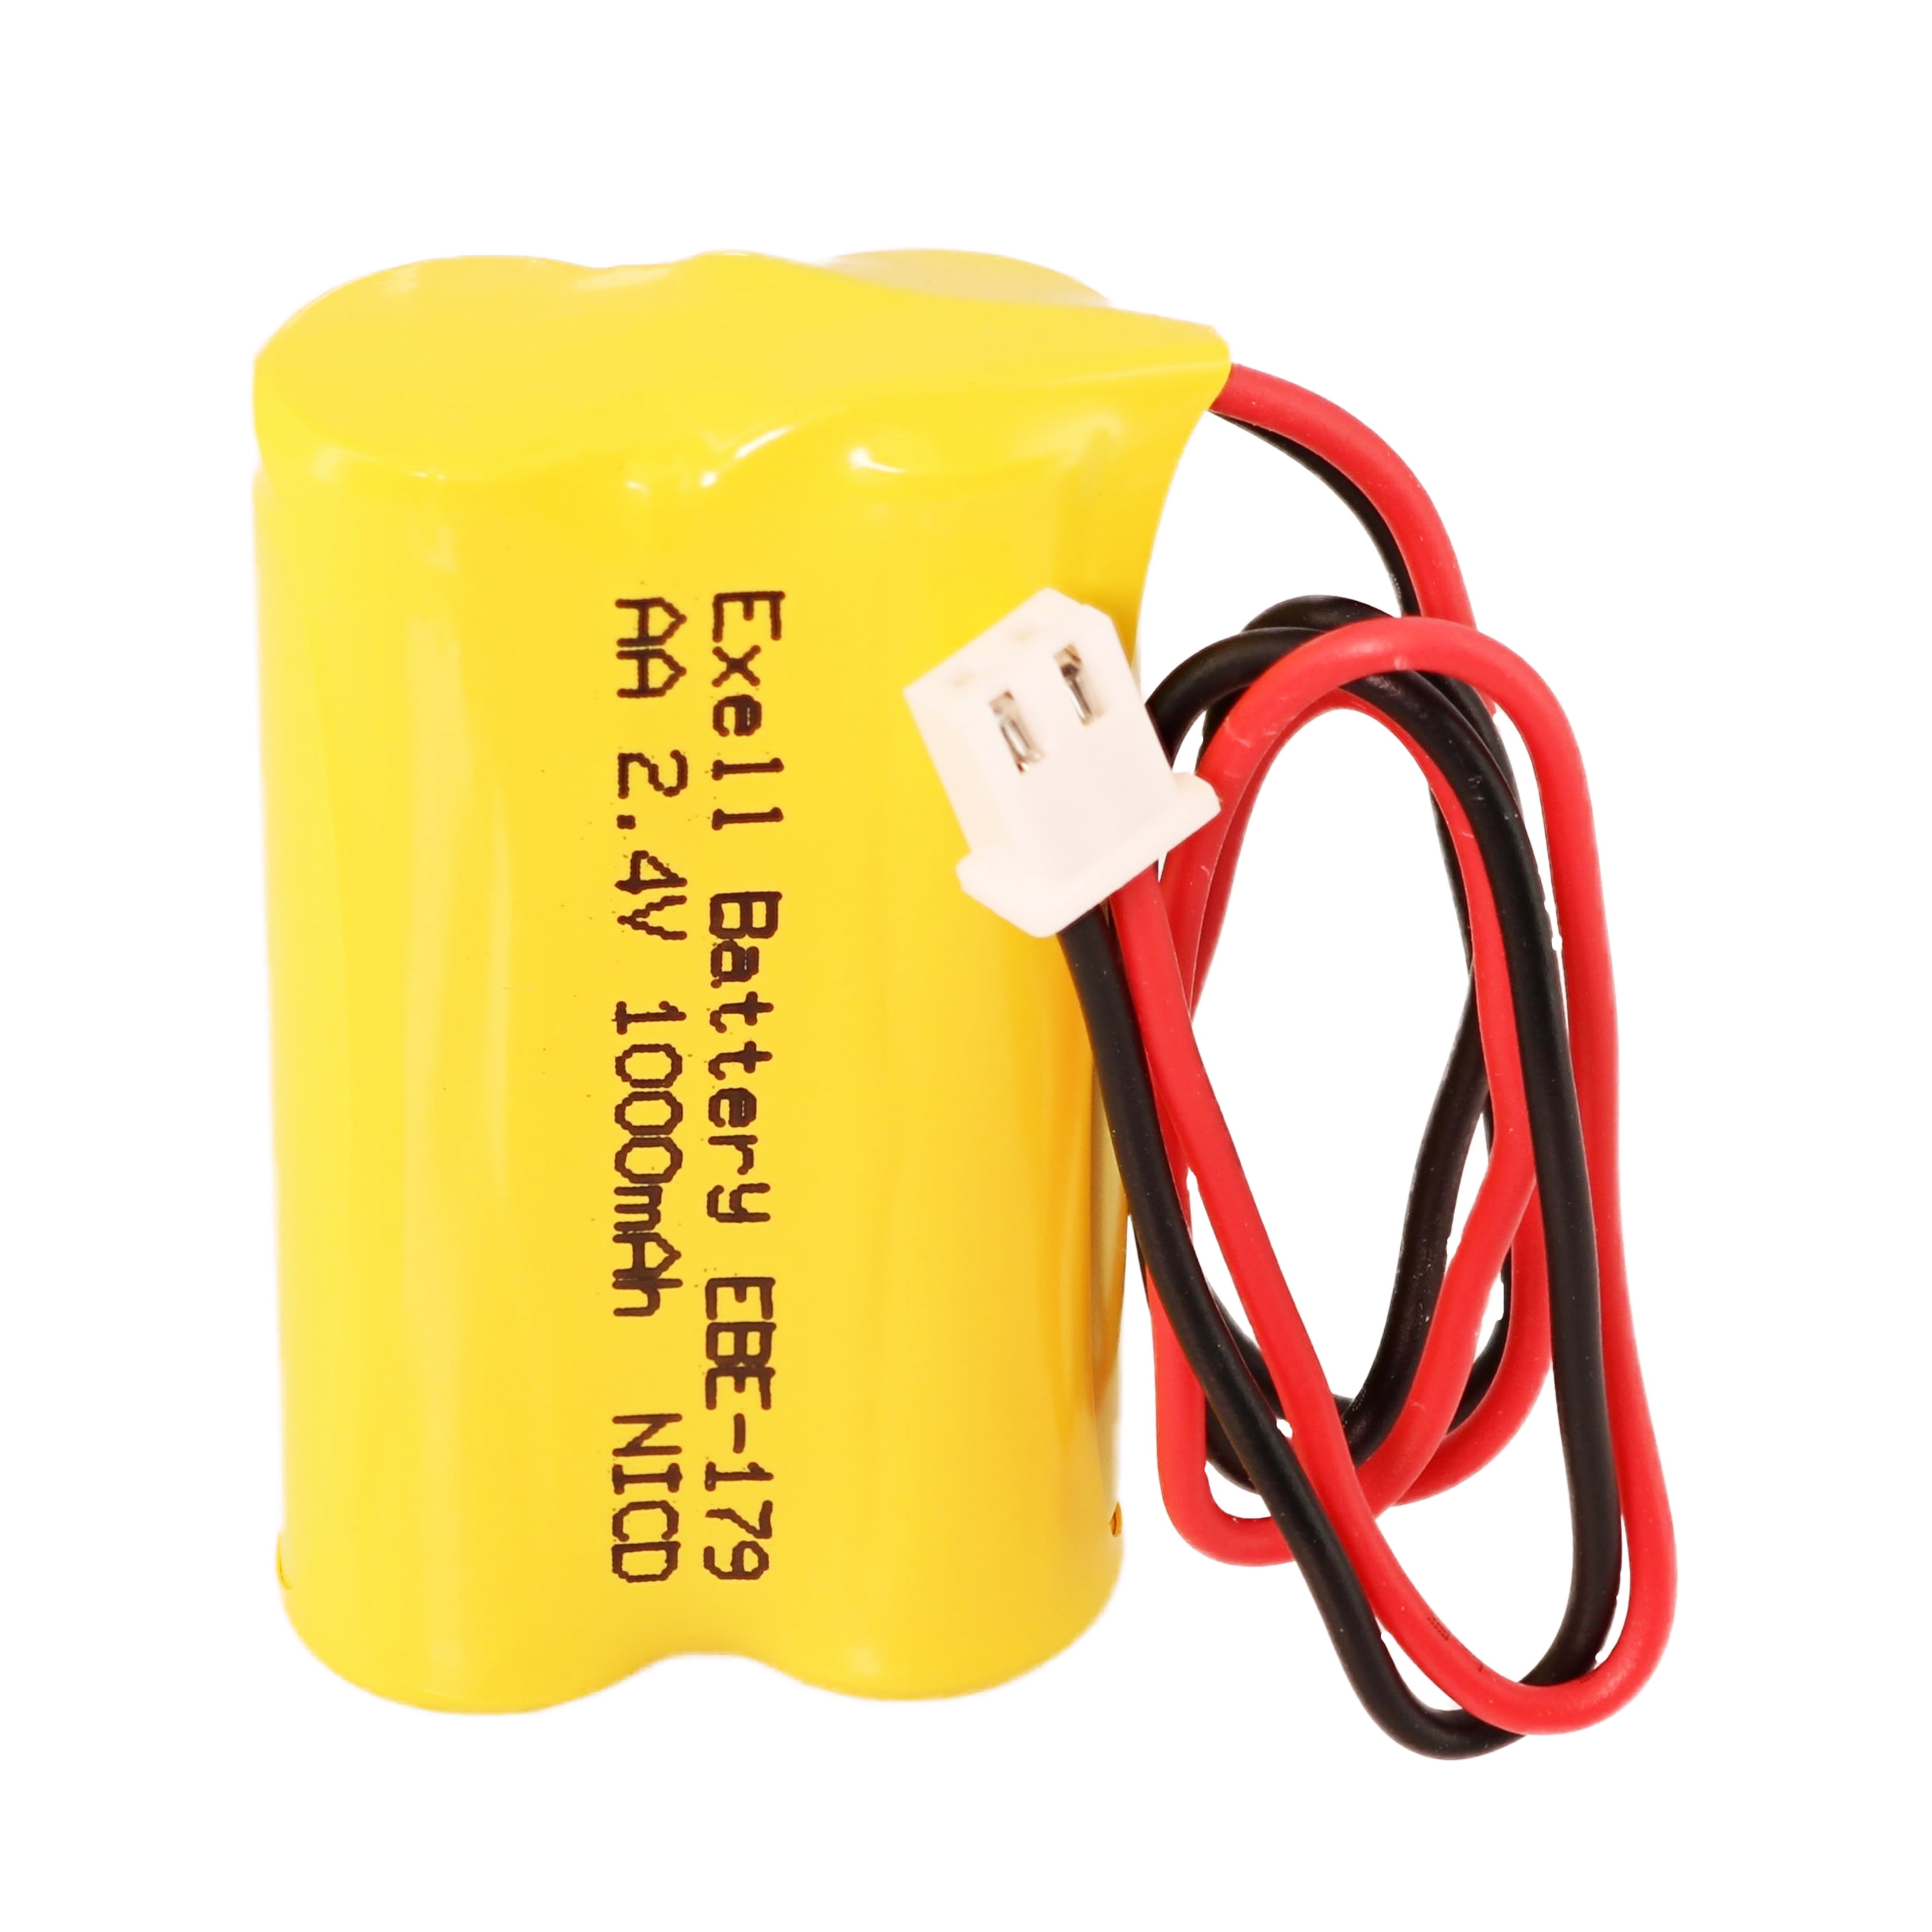 Modern Battery Backup Ul924 Letter Red LED Emergency Exit Light Sign Fast Ship for sale online 